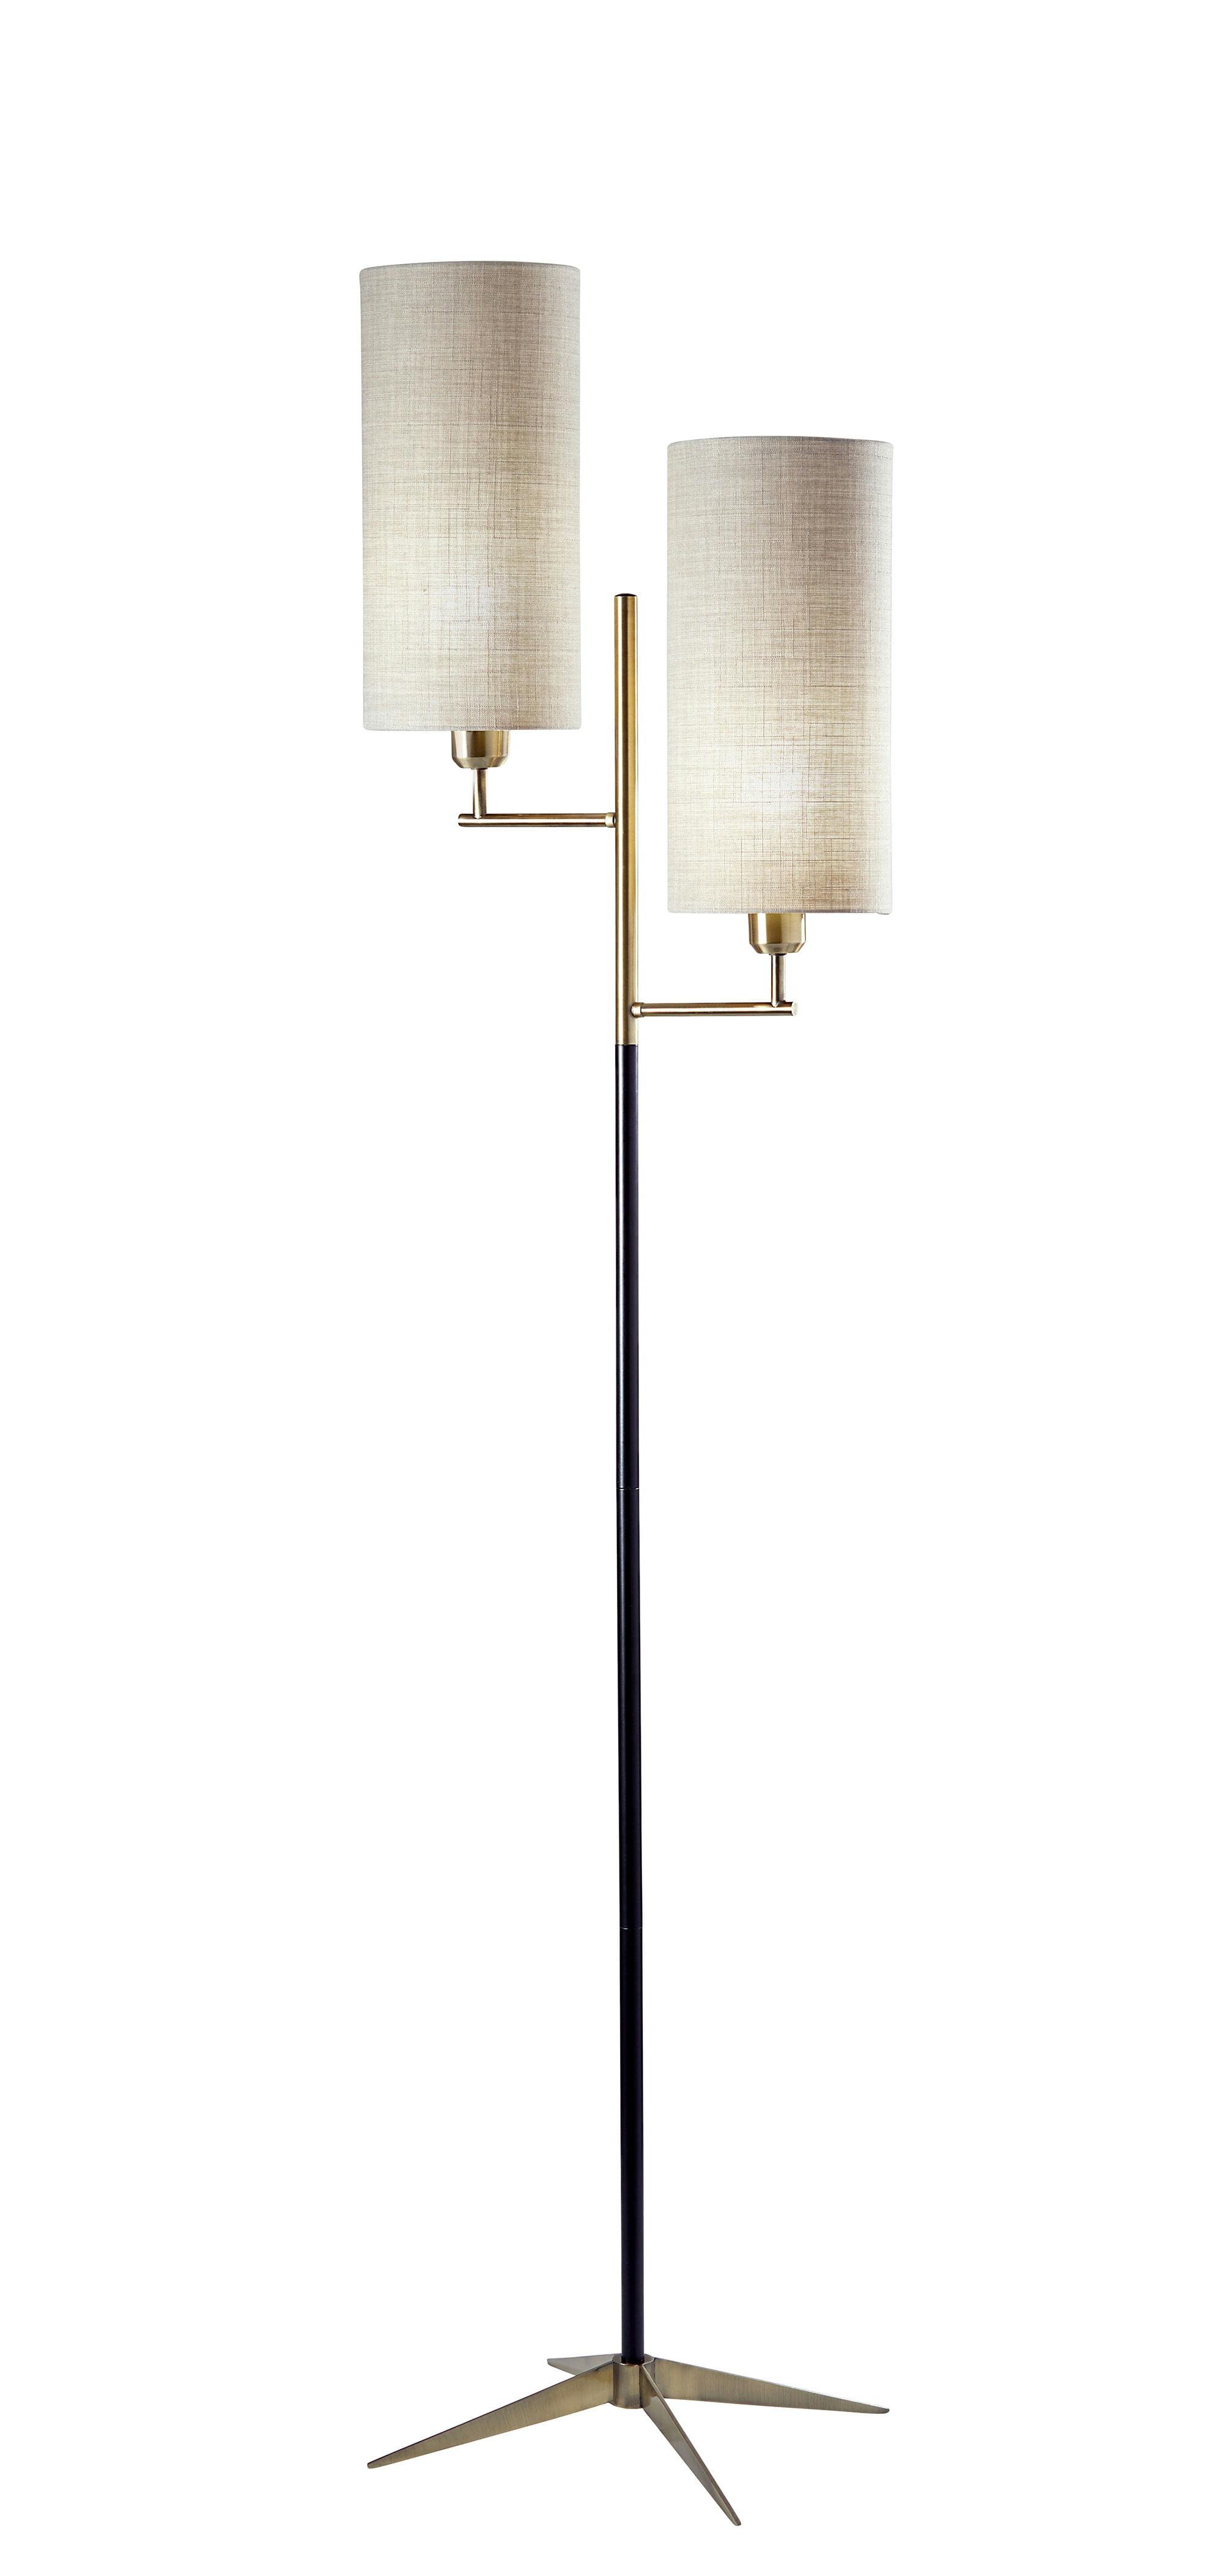 Davis 69.75" Matte Black & Antique Brass Floor Lamp with Textured Shade